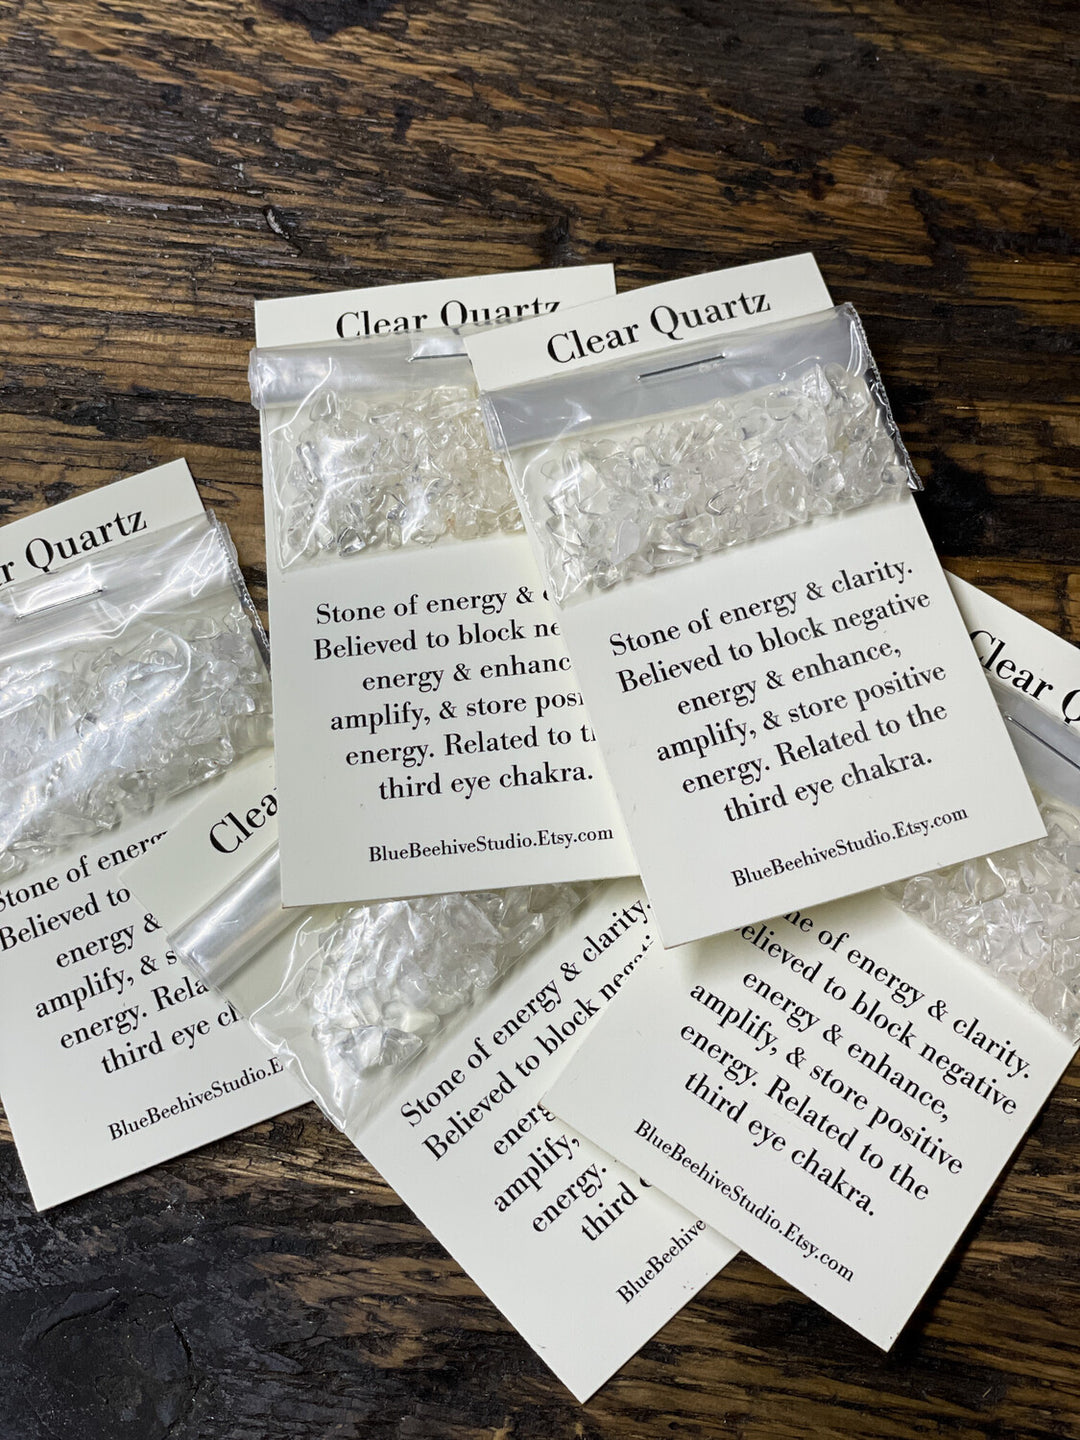 Clear Quartz chips